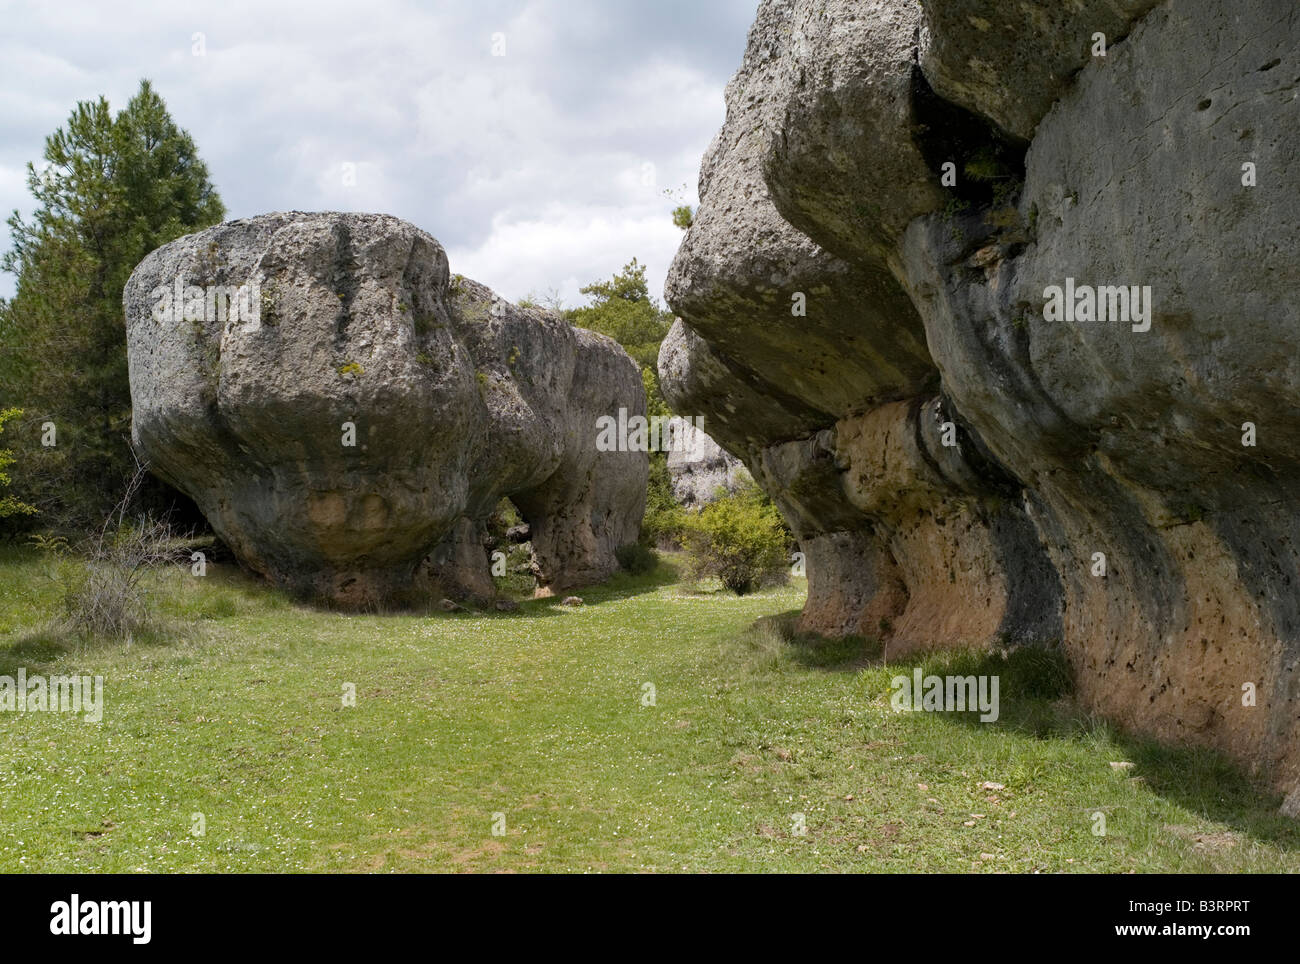 Ciudad Encantada rock formations near Cuenca Spain Stock Photo